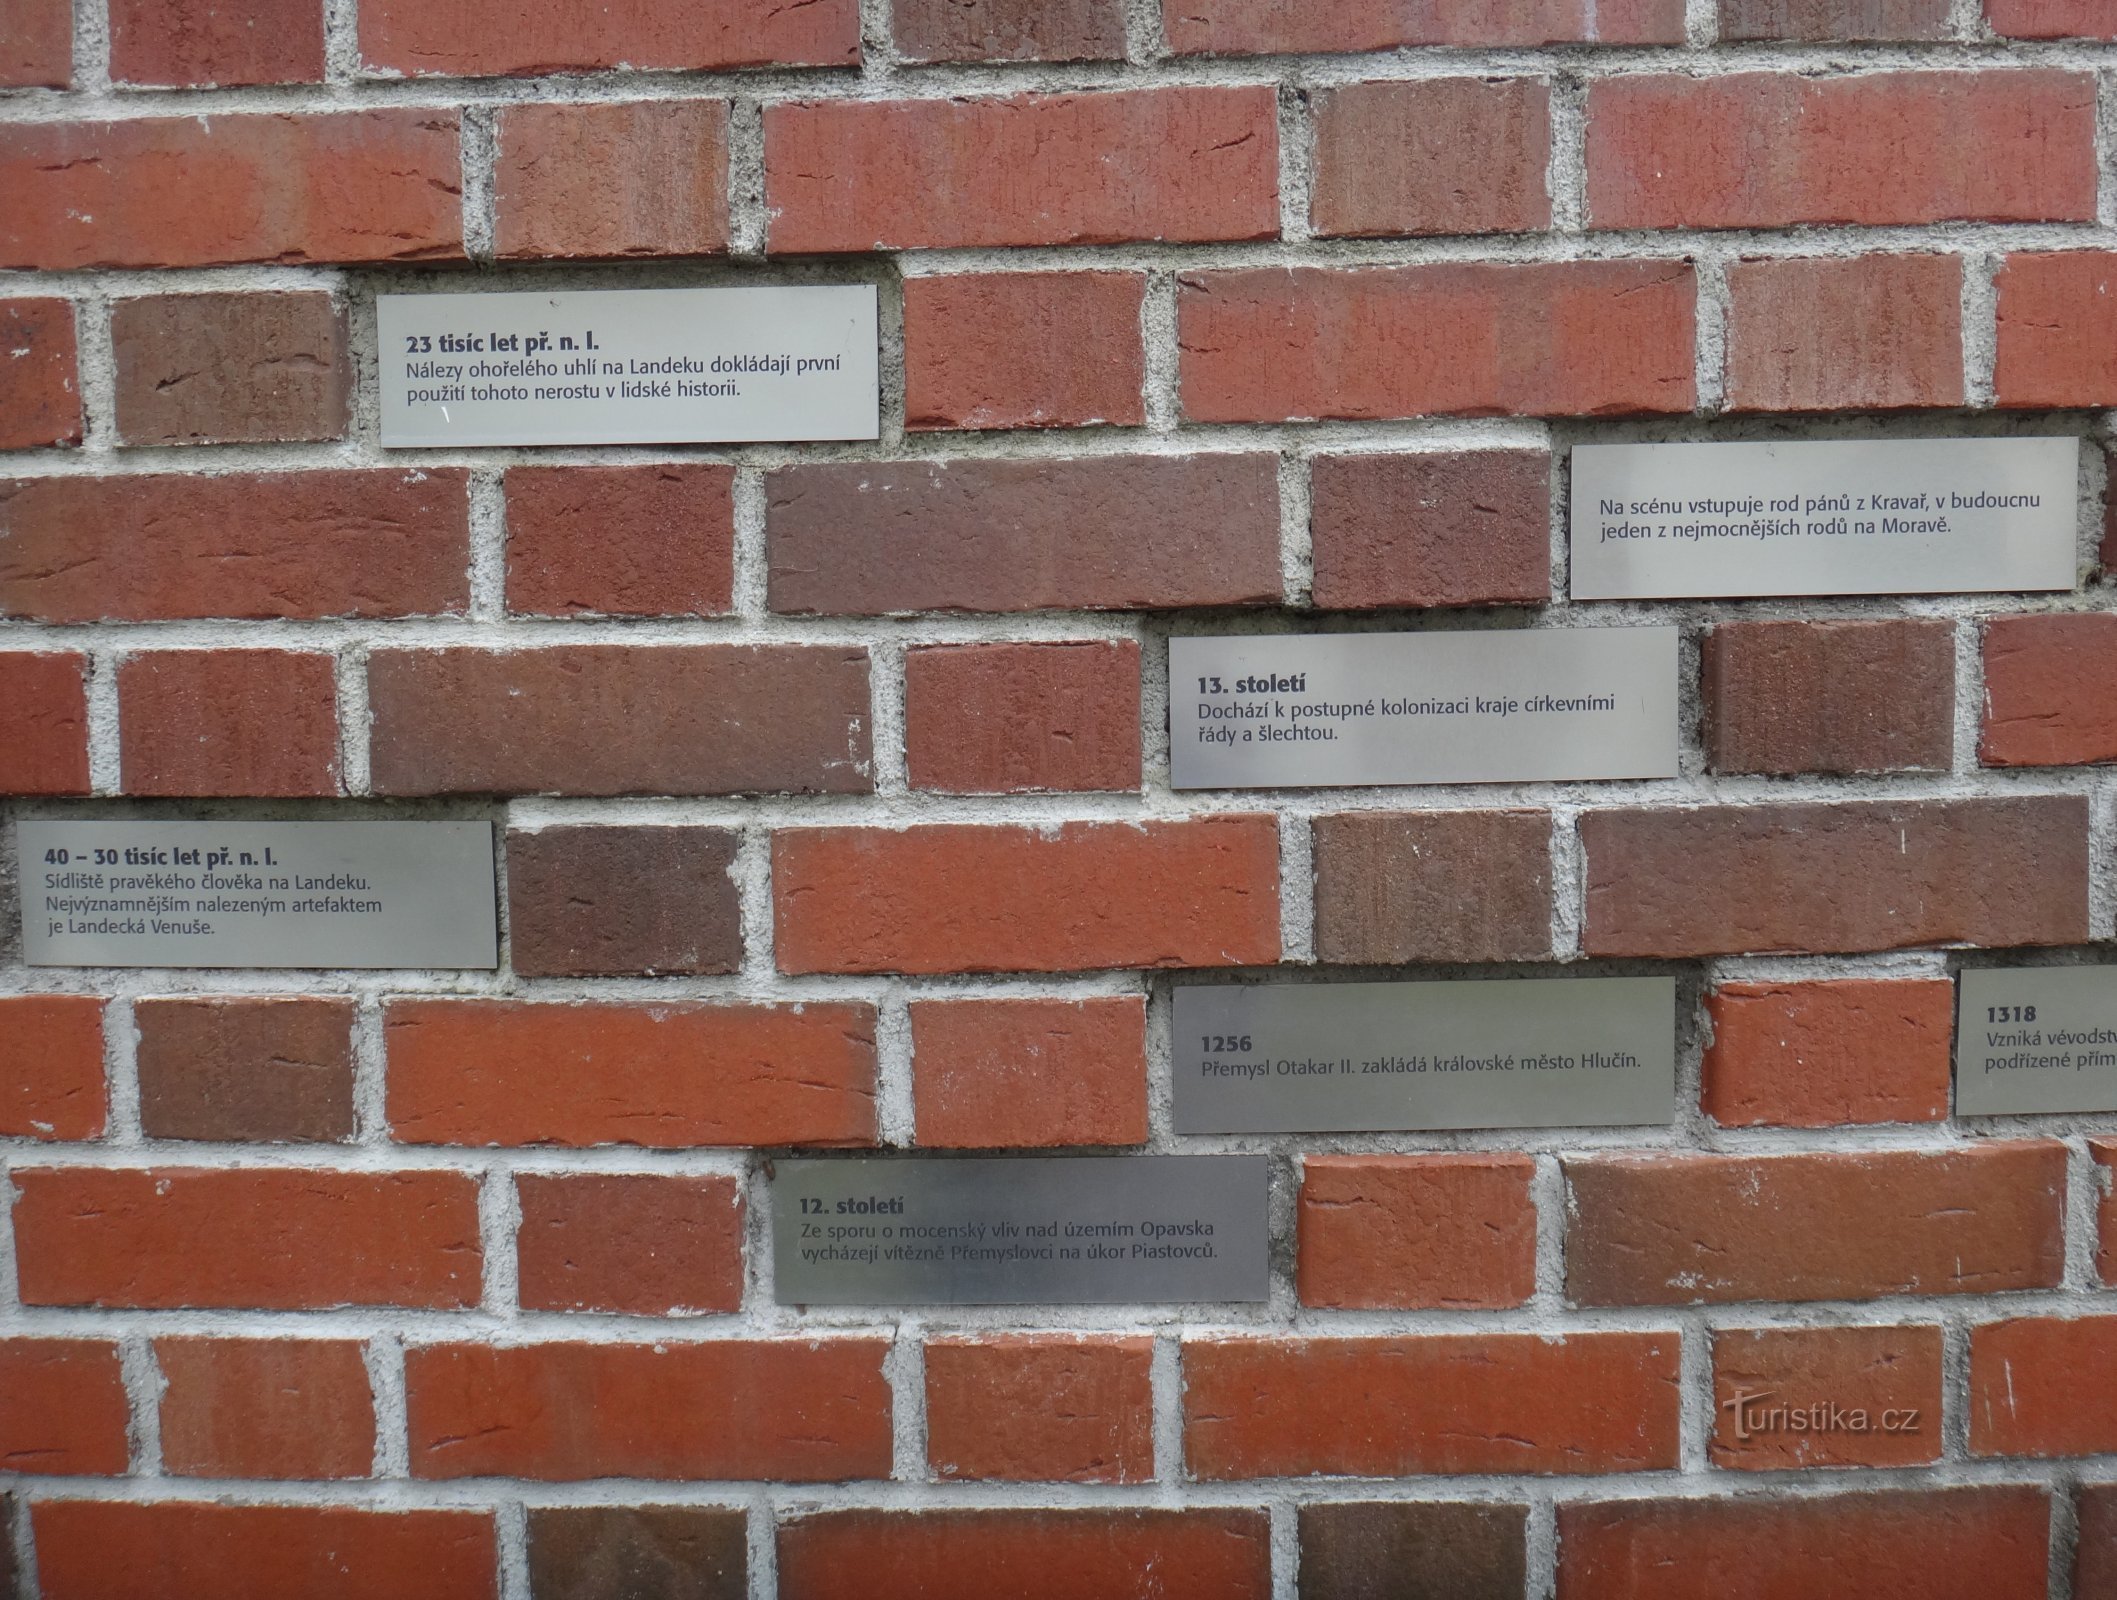 Hlúčín - parede sobre a história